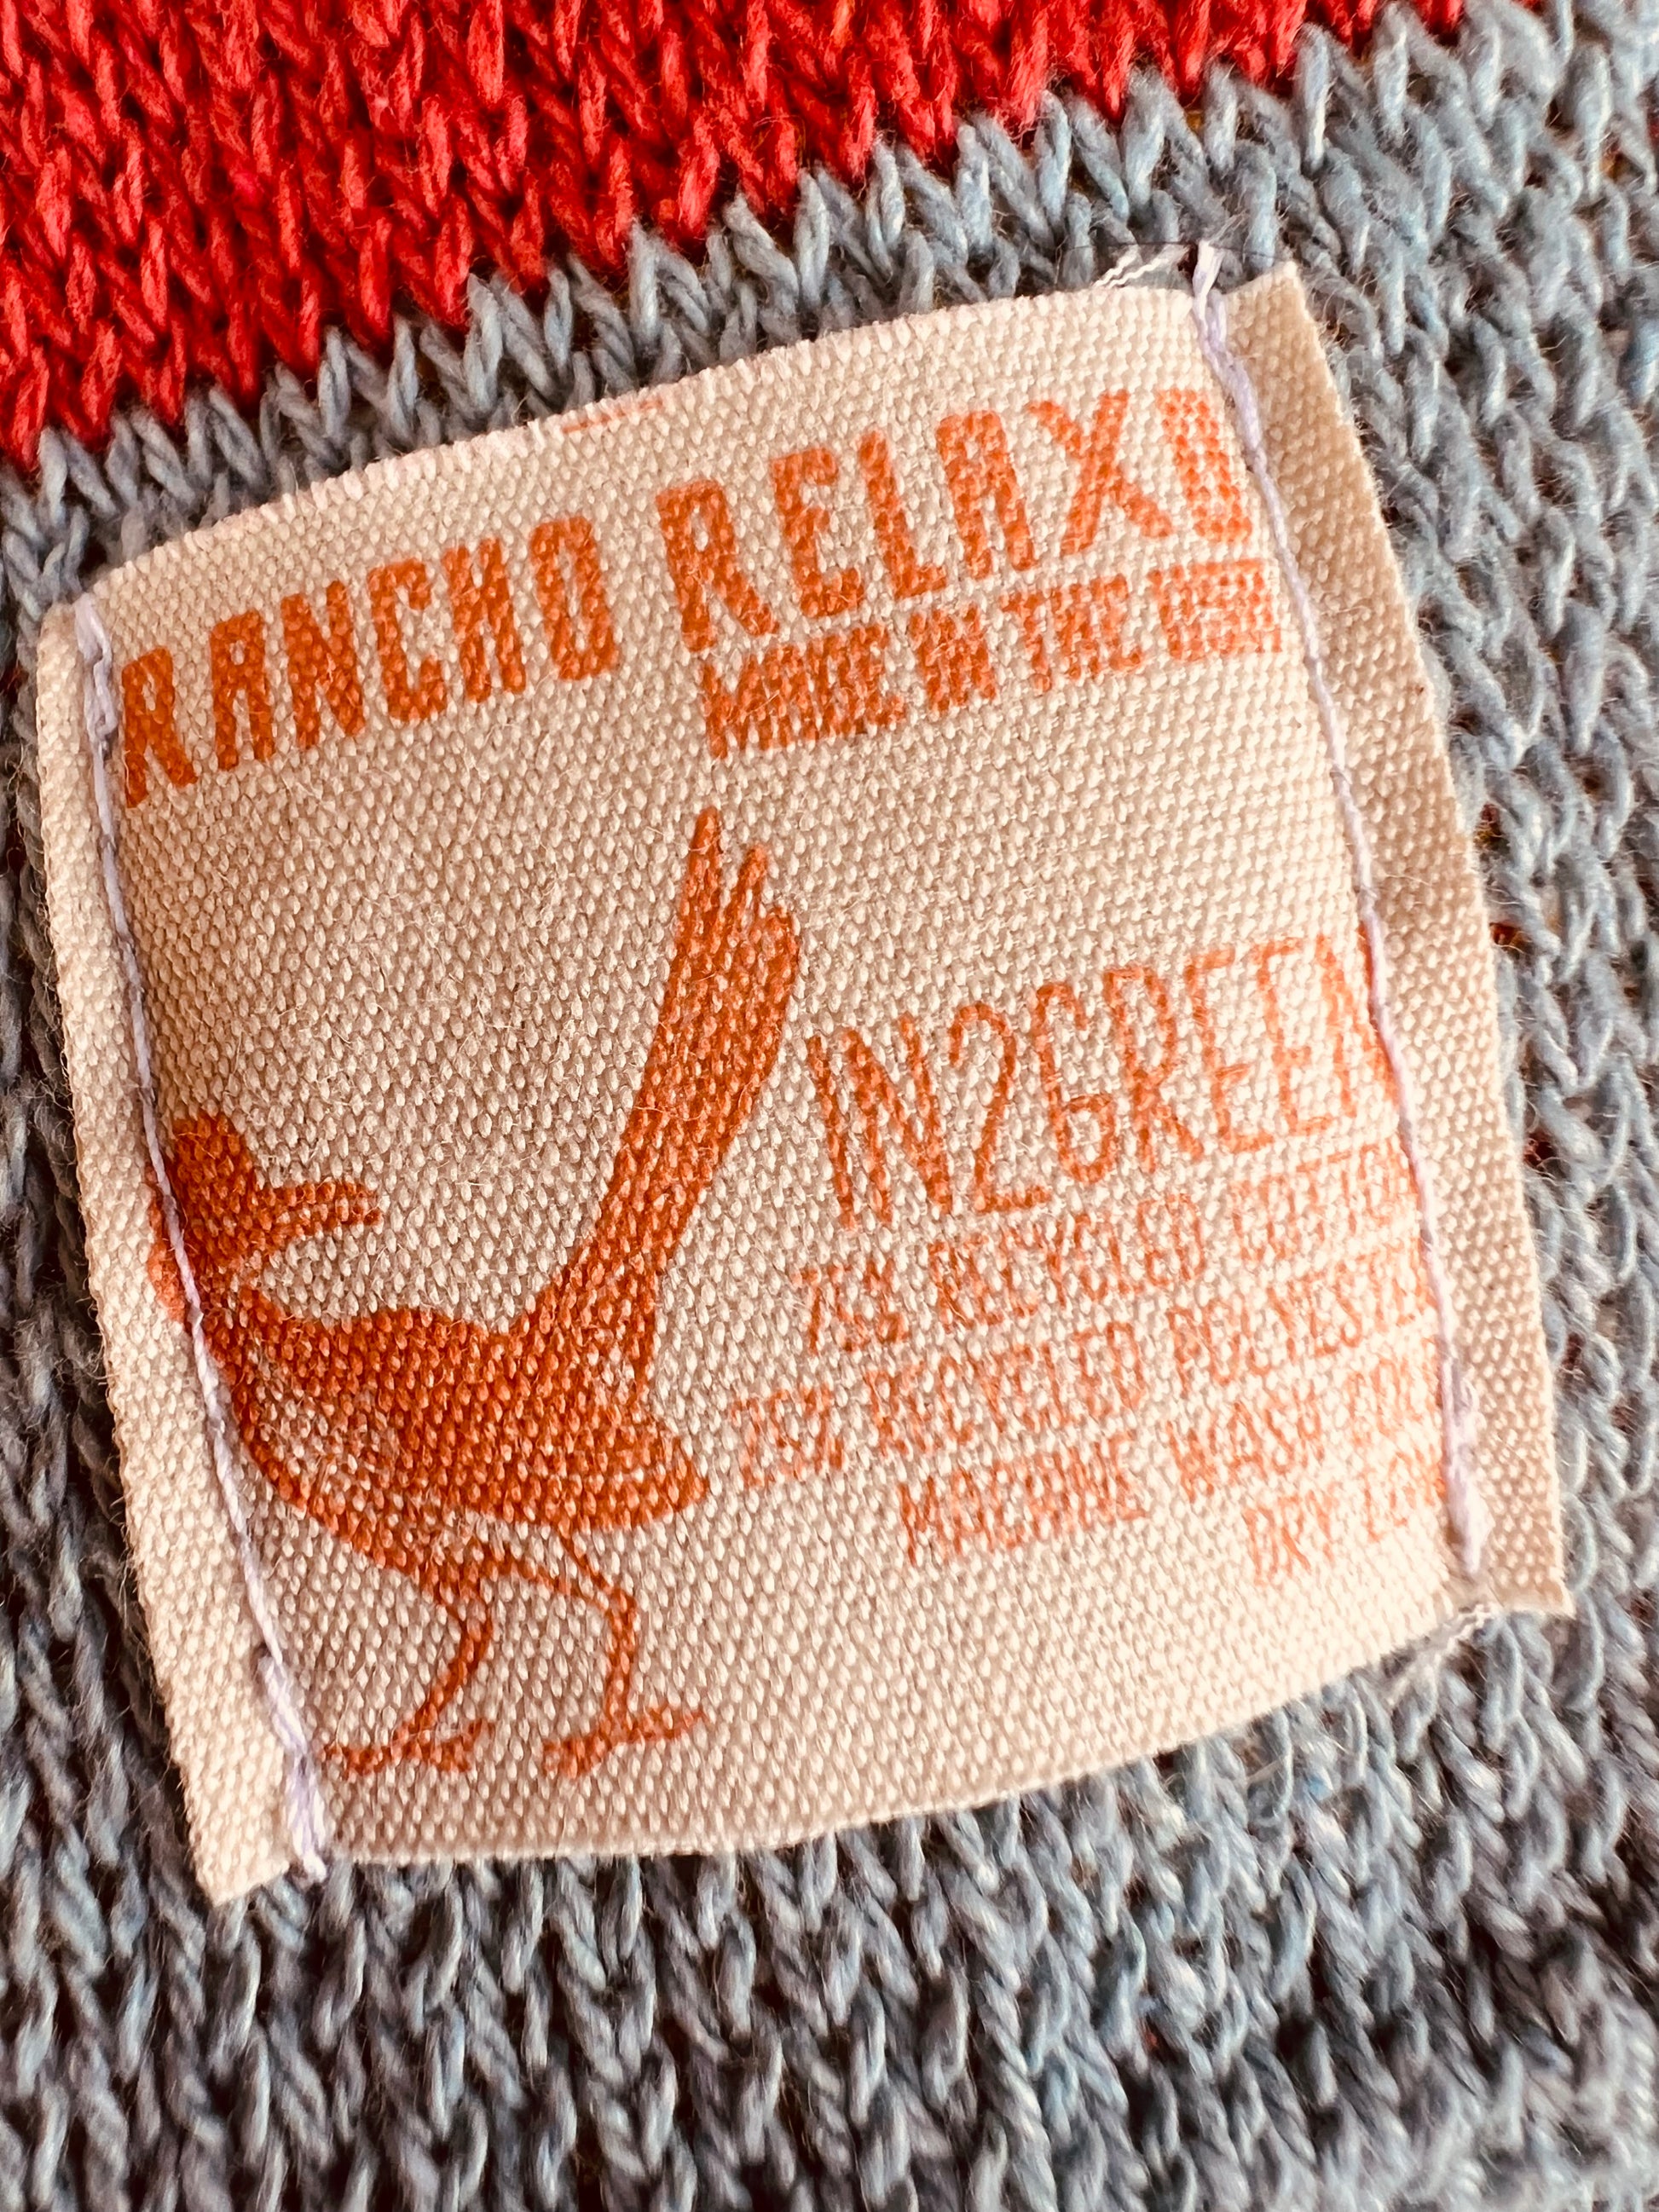 Roadrunner Cozy Blanket - Rancho Relaxo